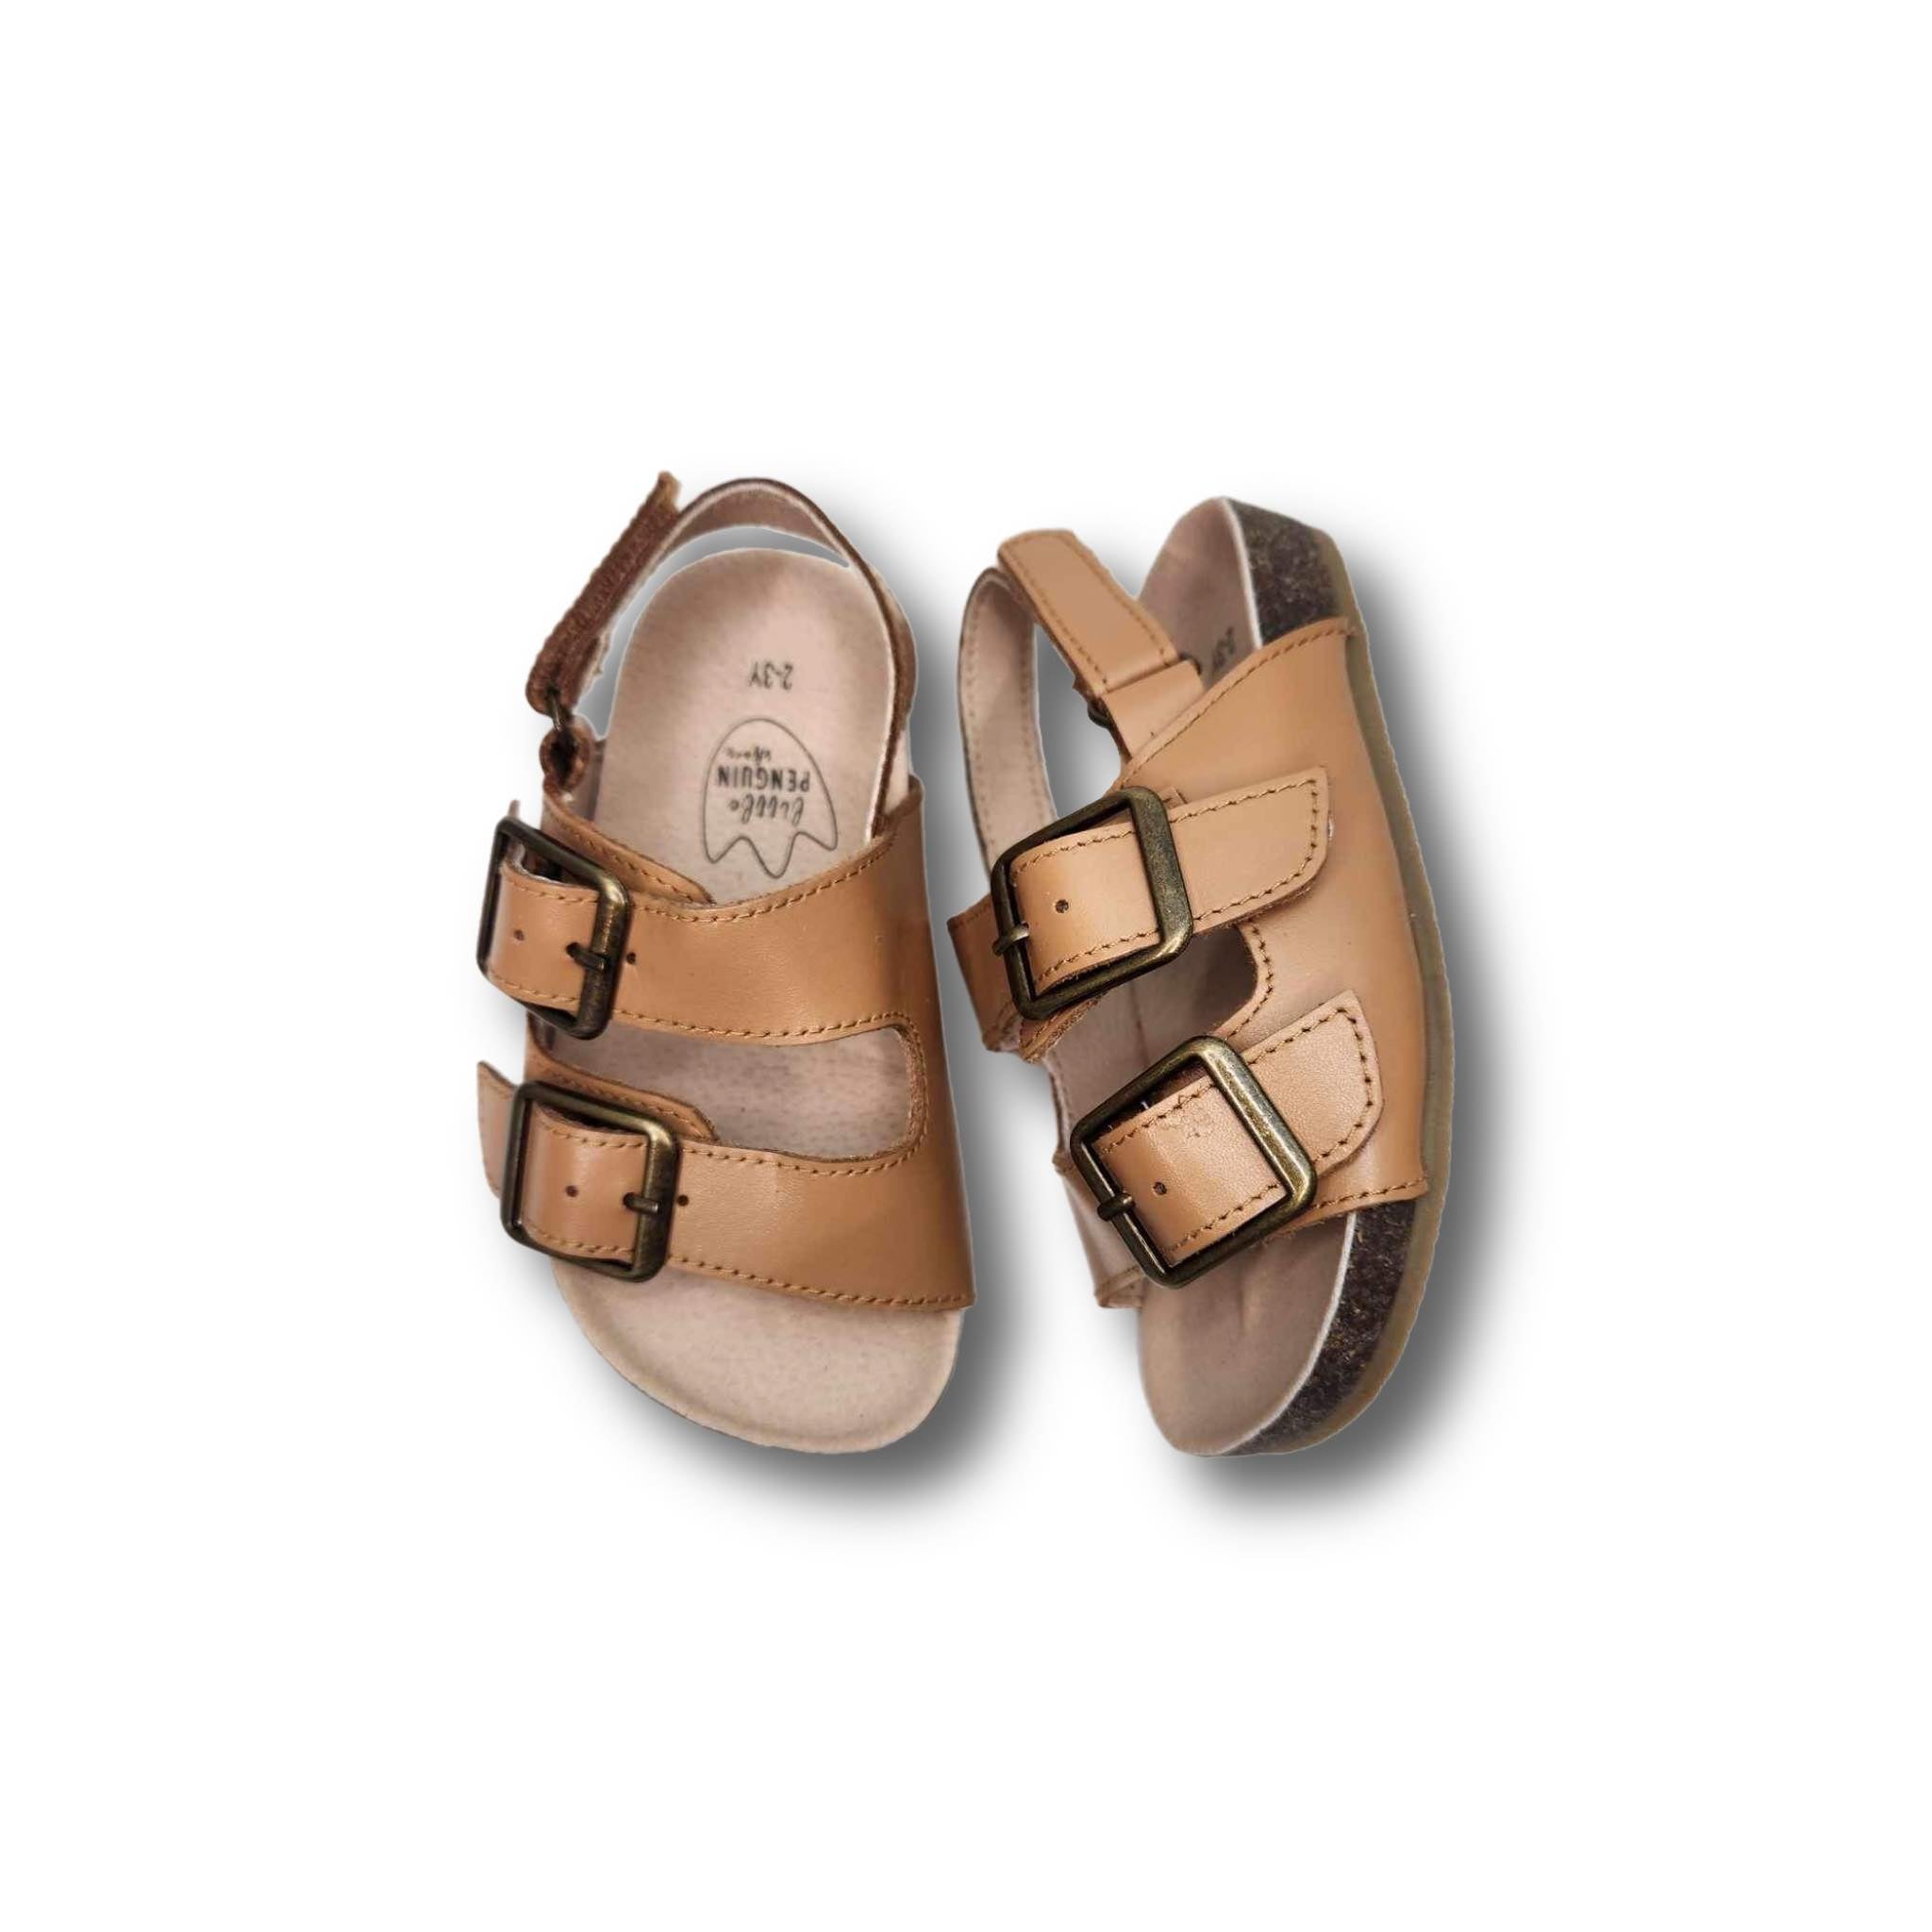 KAYDEN Children's Sandal in Natural Leather